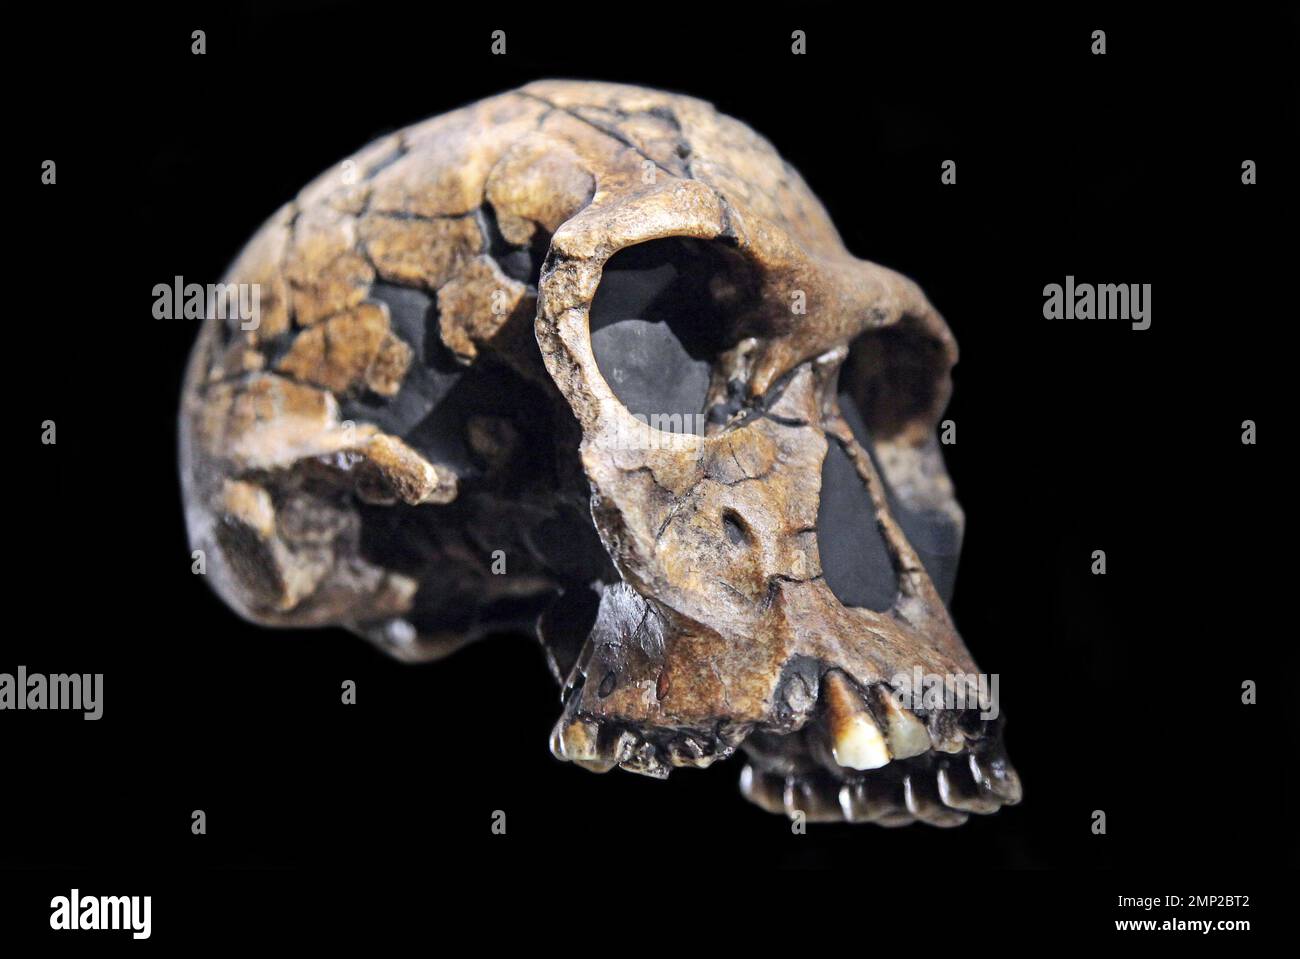 Spezies Homo habilis Skull. Handy man. Archaische Spezies von Homo. Lebte vor 2,1 bis 1,5 Millionen Jahren. Stockfoto